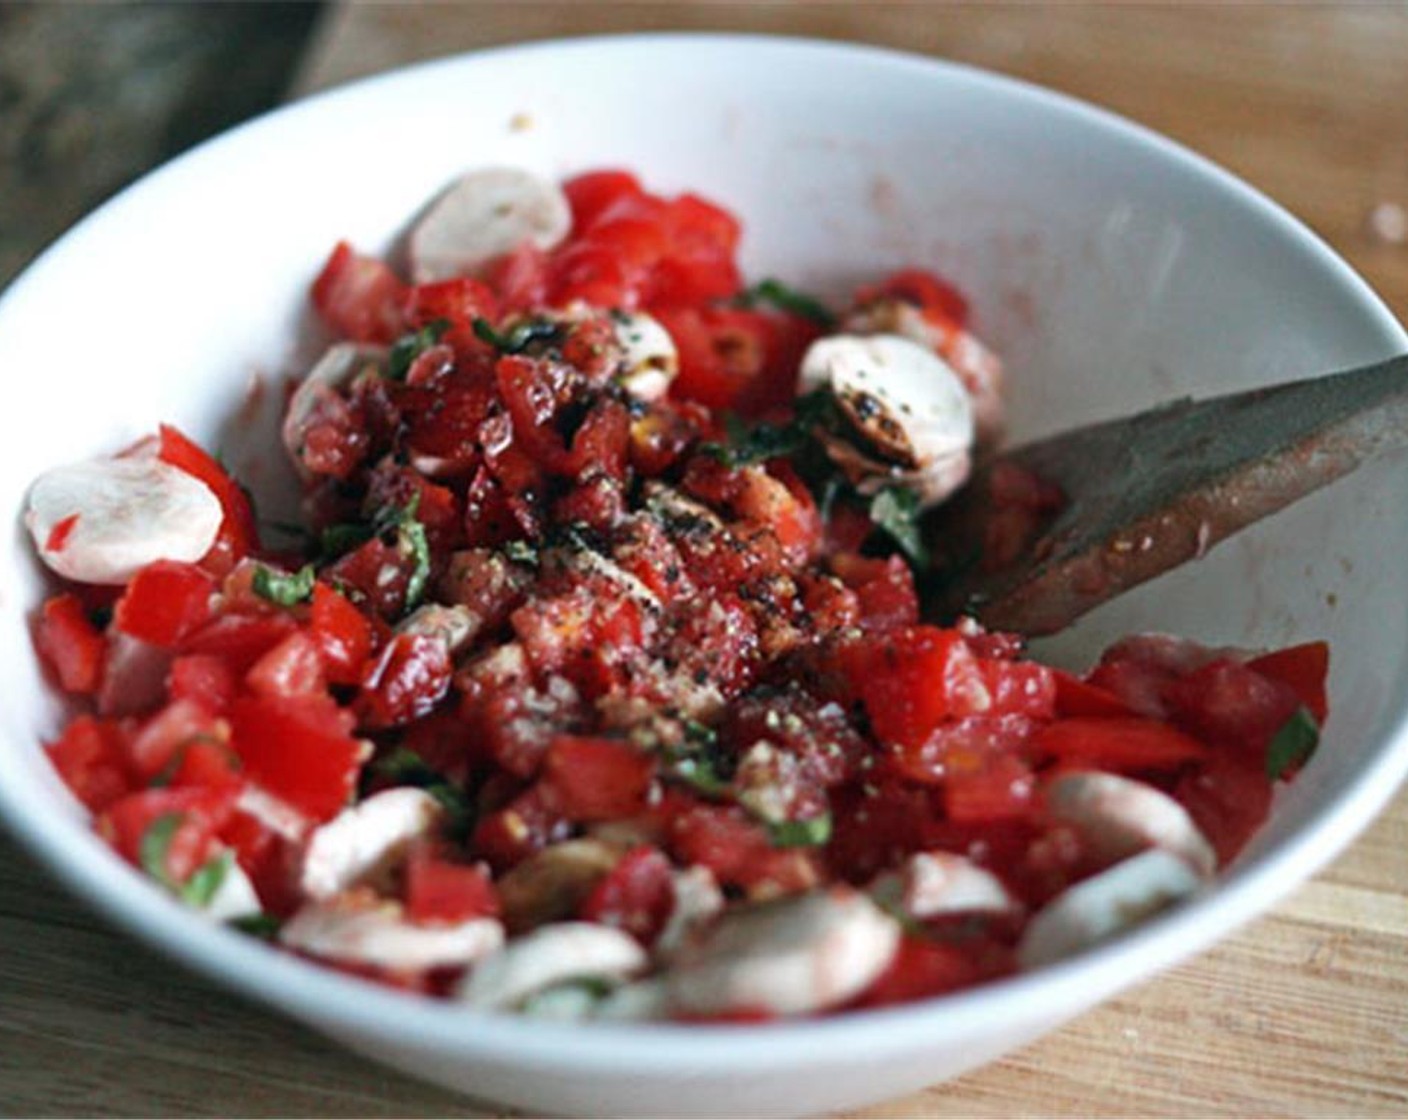 Schritt 4 Tomate, Mozzarella und Basilikum mit in die Schüssel geben. Essig (1 EL), Salz (nach Bedarf) und Pfeffer (nach Bedarf) hinzufügen und gut verrühren. Beiseitestellen, während das Brot zubereitet wird.